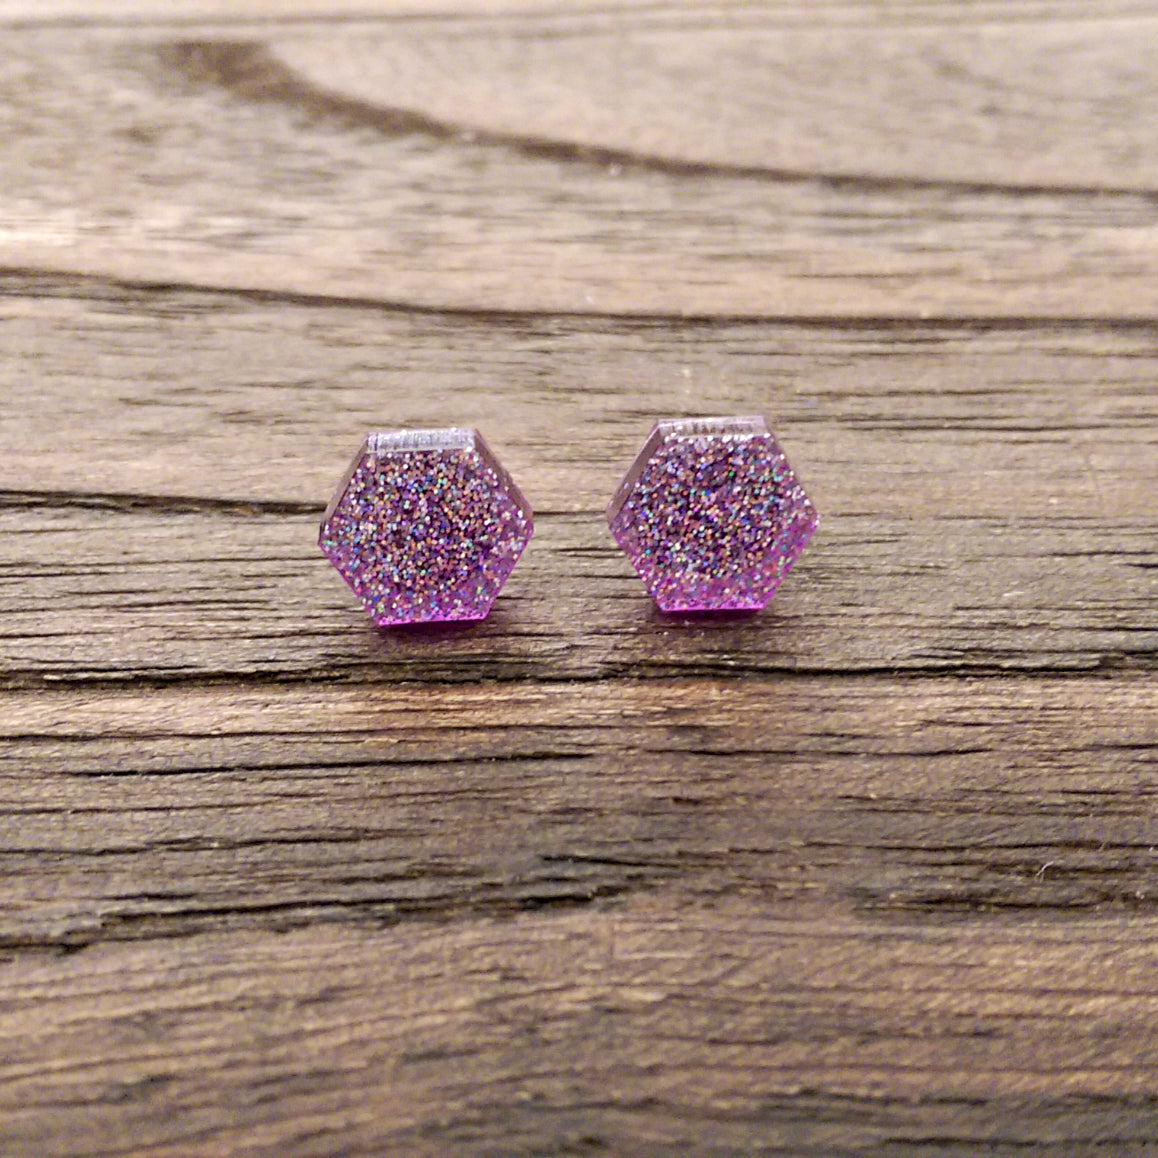 Hexagon Resin Stud Earrings, Purple Sparkly Earrings. Stainless Steel Stud Earrings. 10mm - Silver and Resin Designs